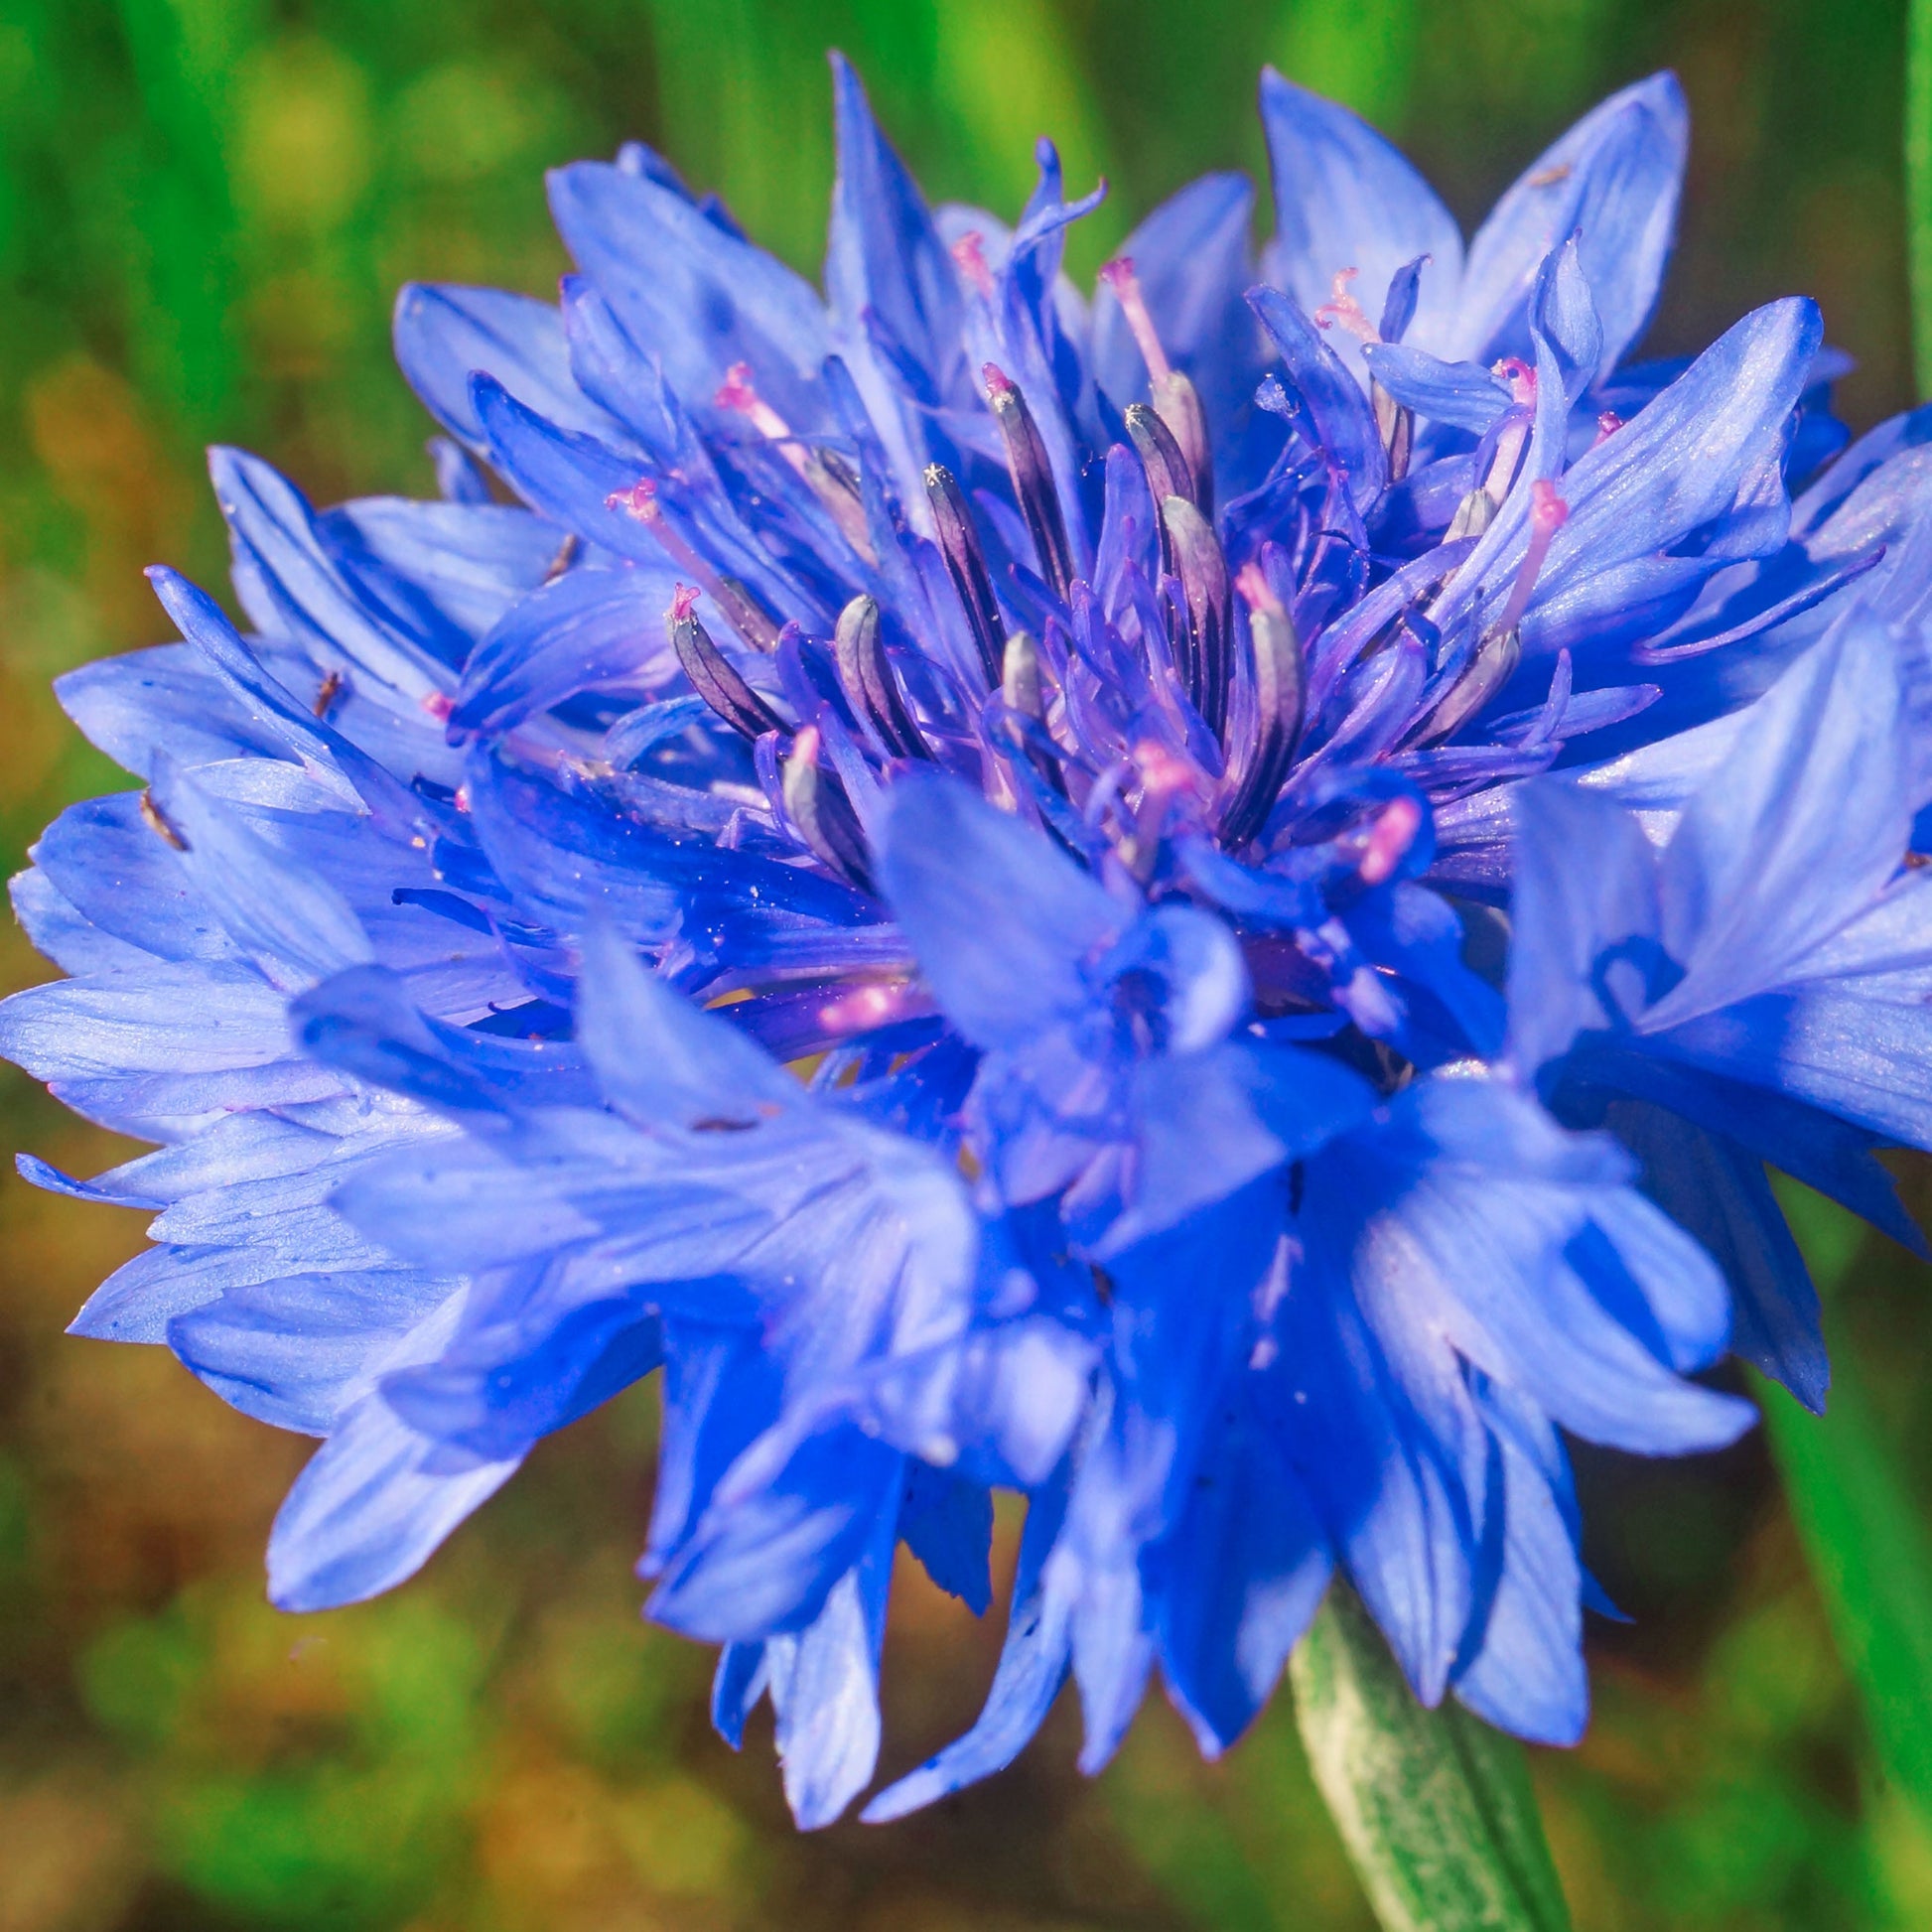 cornflower dwarf blue